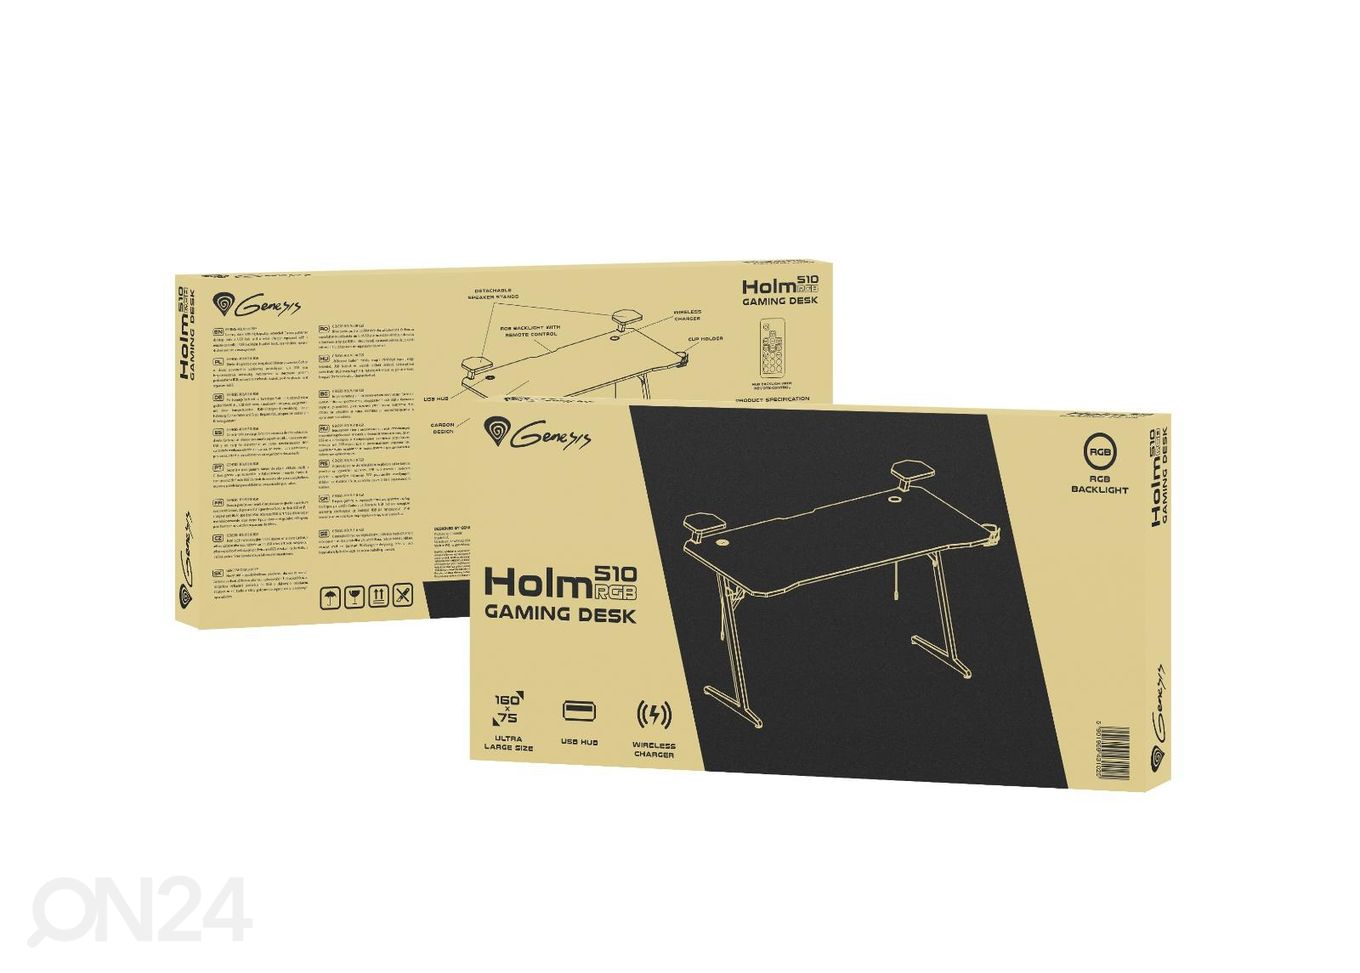 Mängurilaud Genesis Holm 510 RGB, must suurendatud